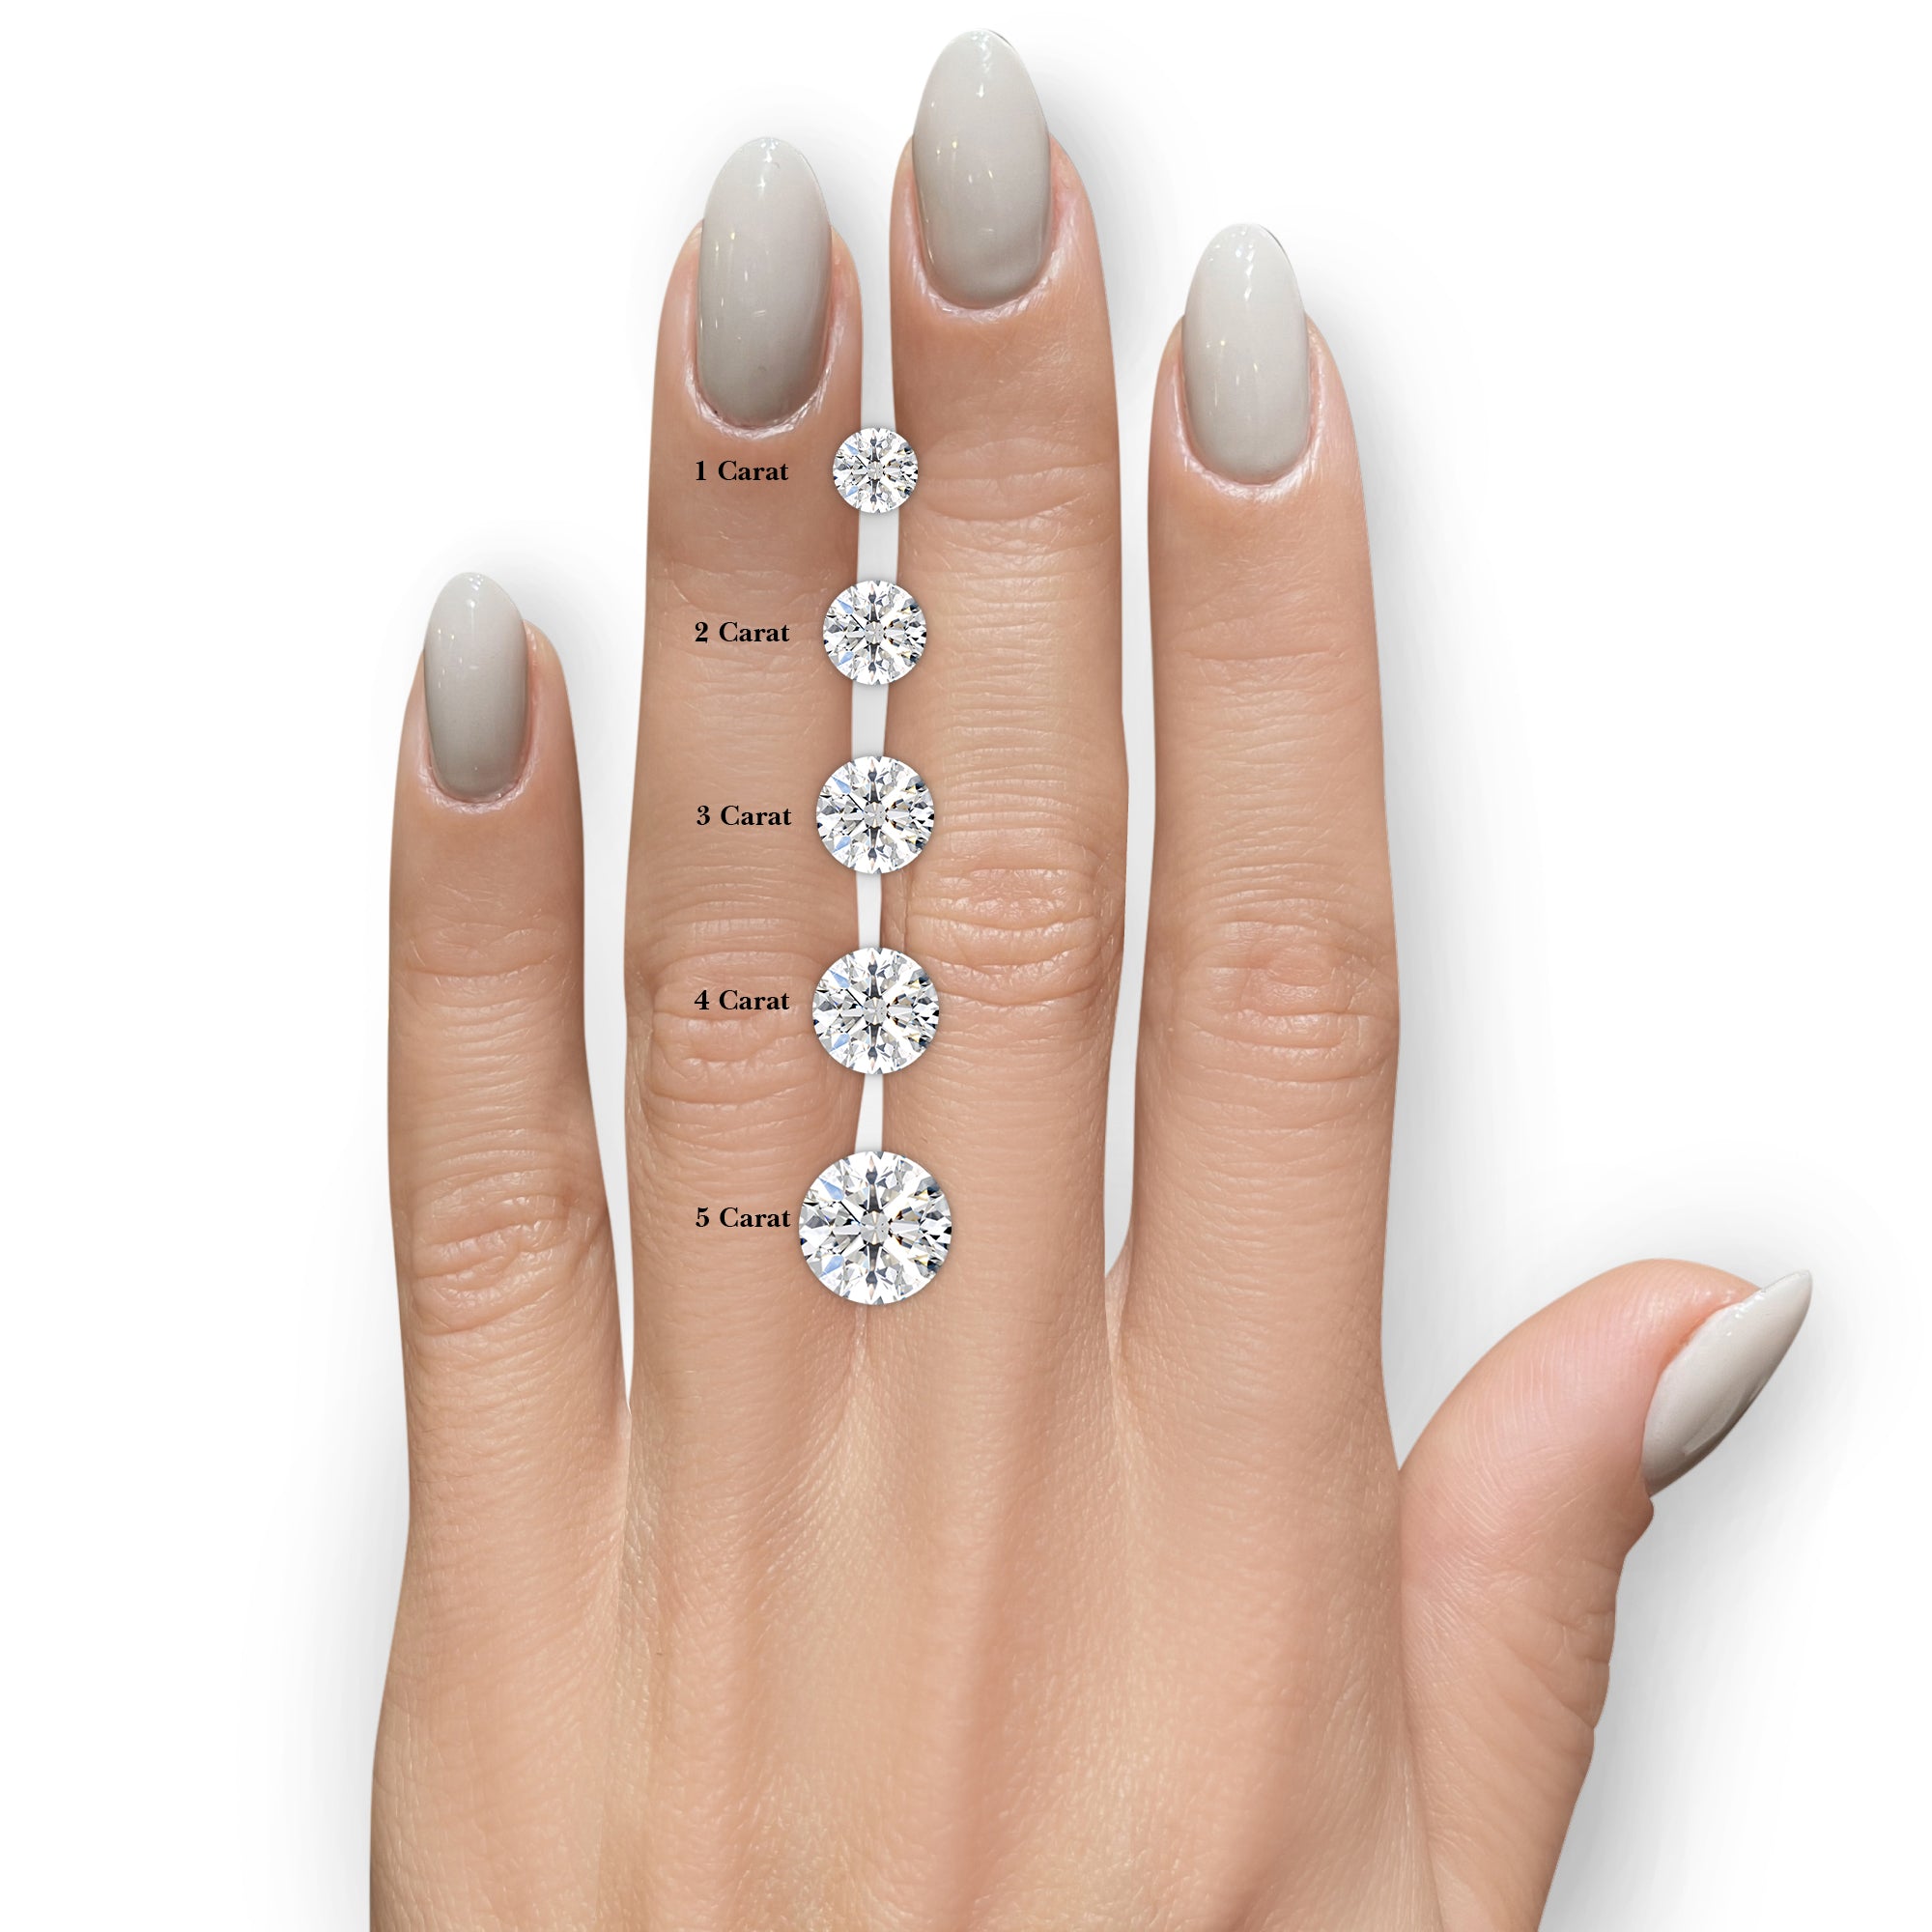 Willow Lab Grown Diamond Ring -14K White Gold